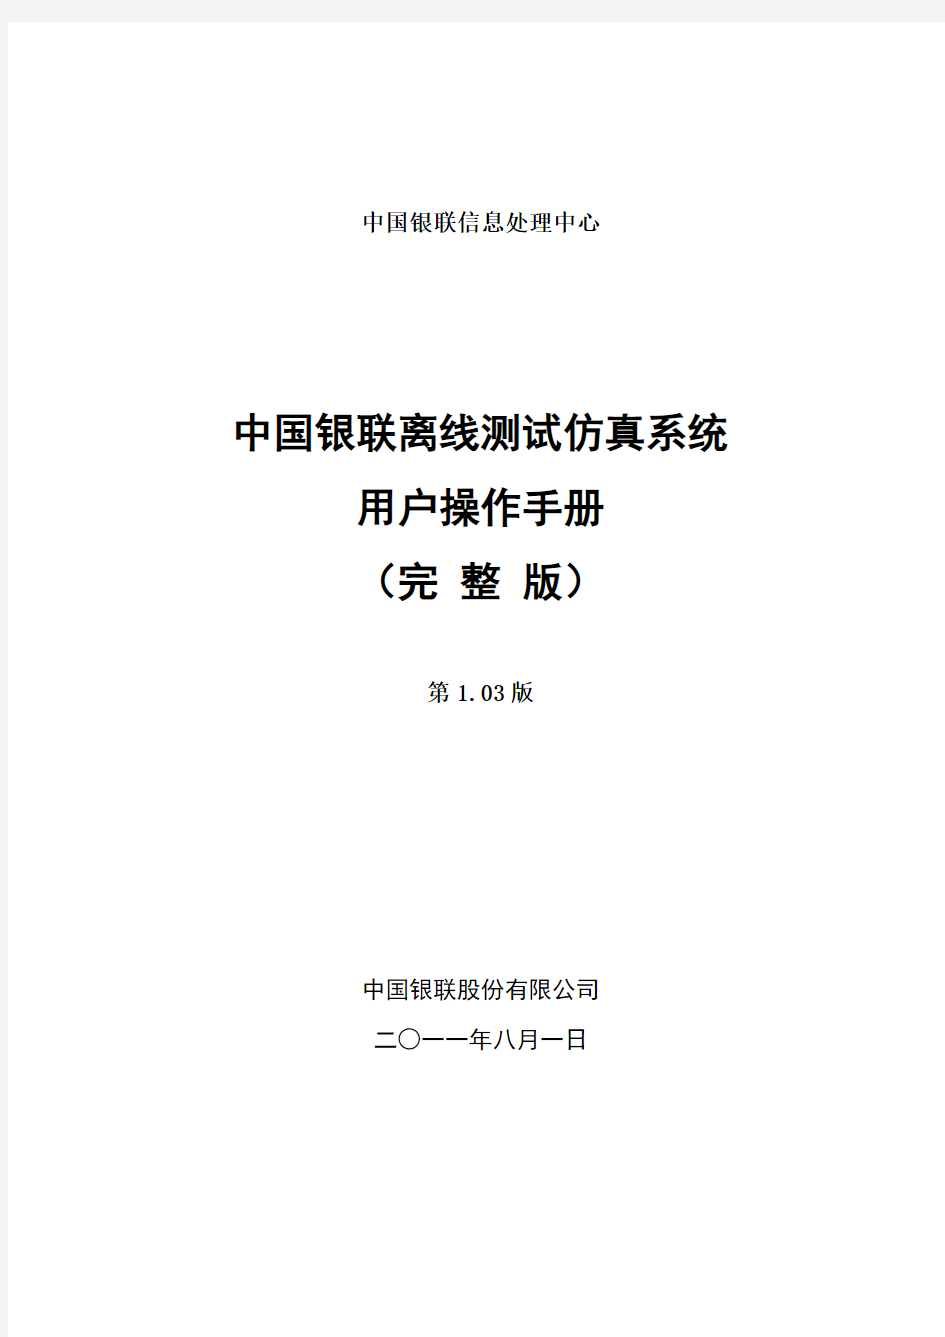 中国银联离线仿真用户使用手册(完整版)